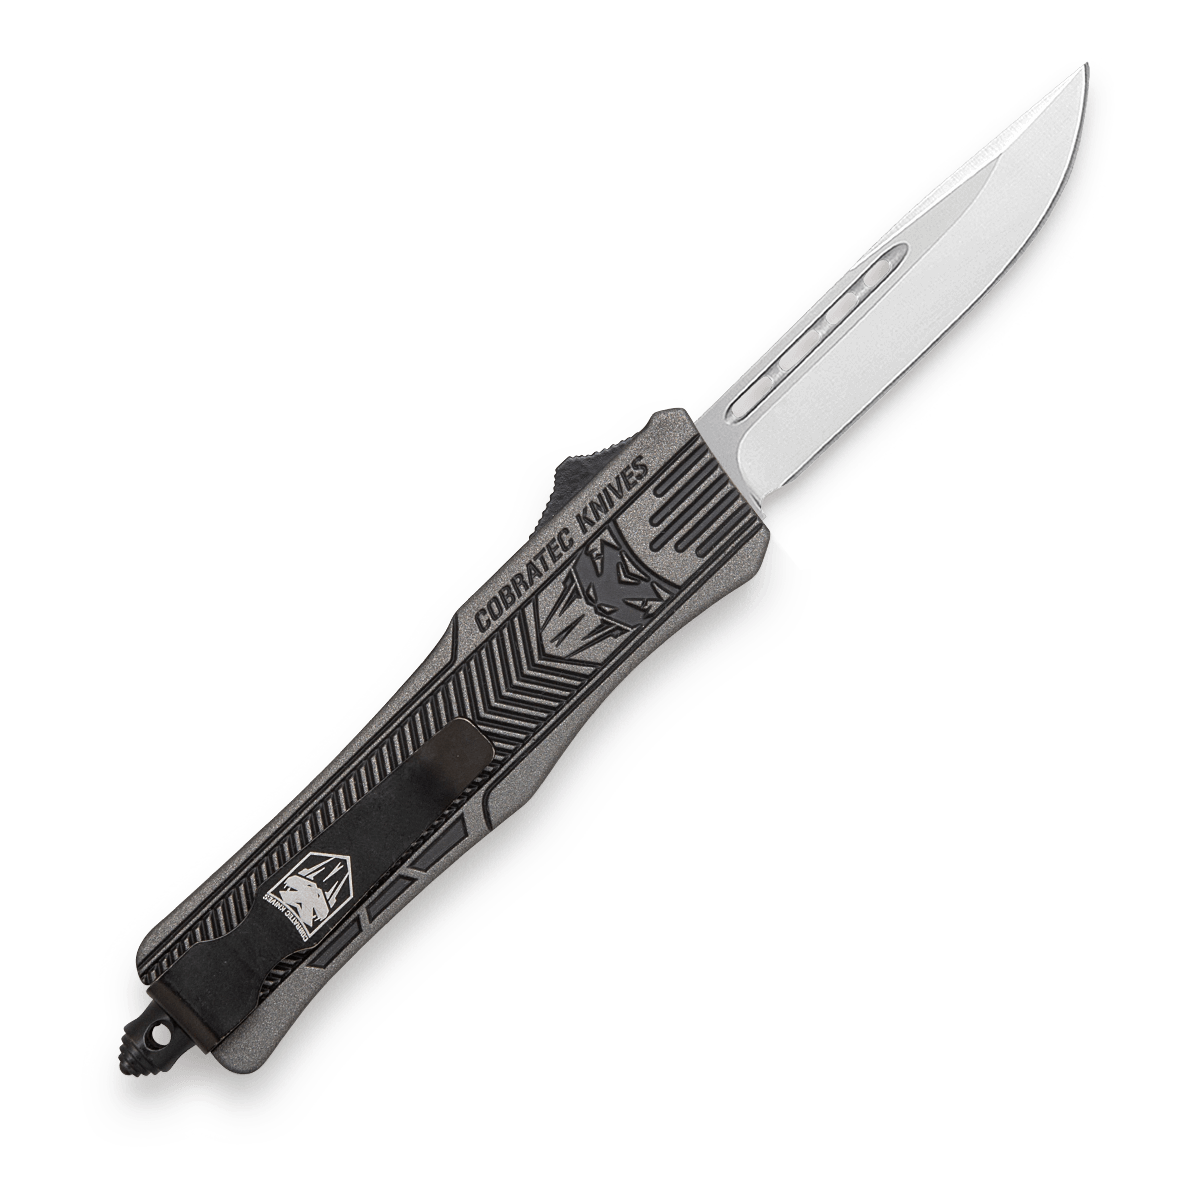 Small CTK-1 Tungsten w/ Graphite Black - CobraTec Knives